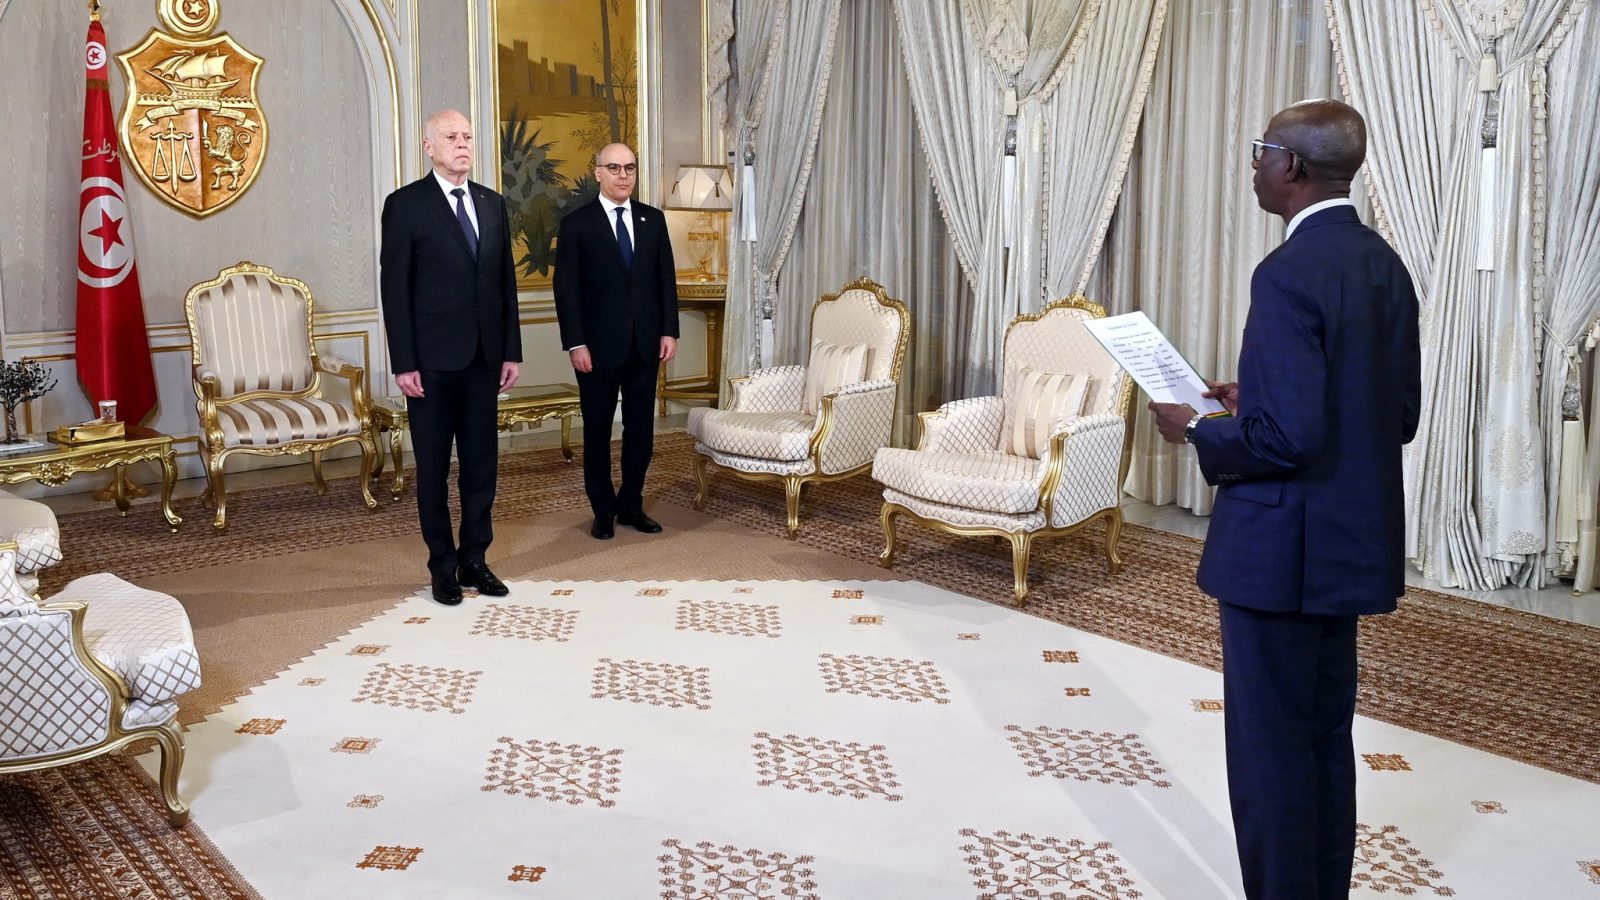 الرئيس يشرف على موكب تسلّم اوراق اعتماد سفراء جُدد بتونس (صور)